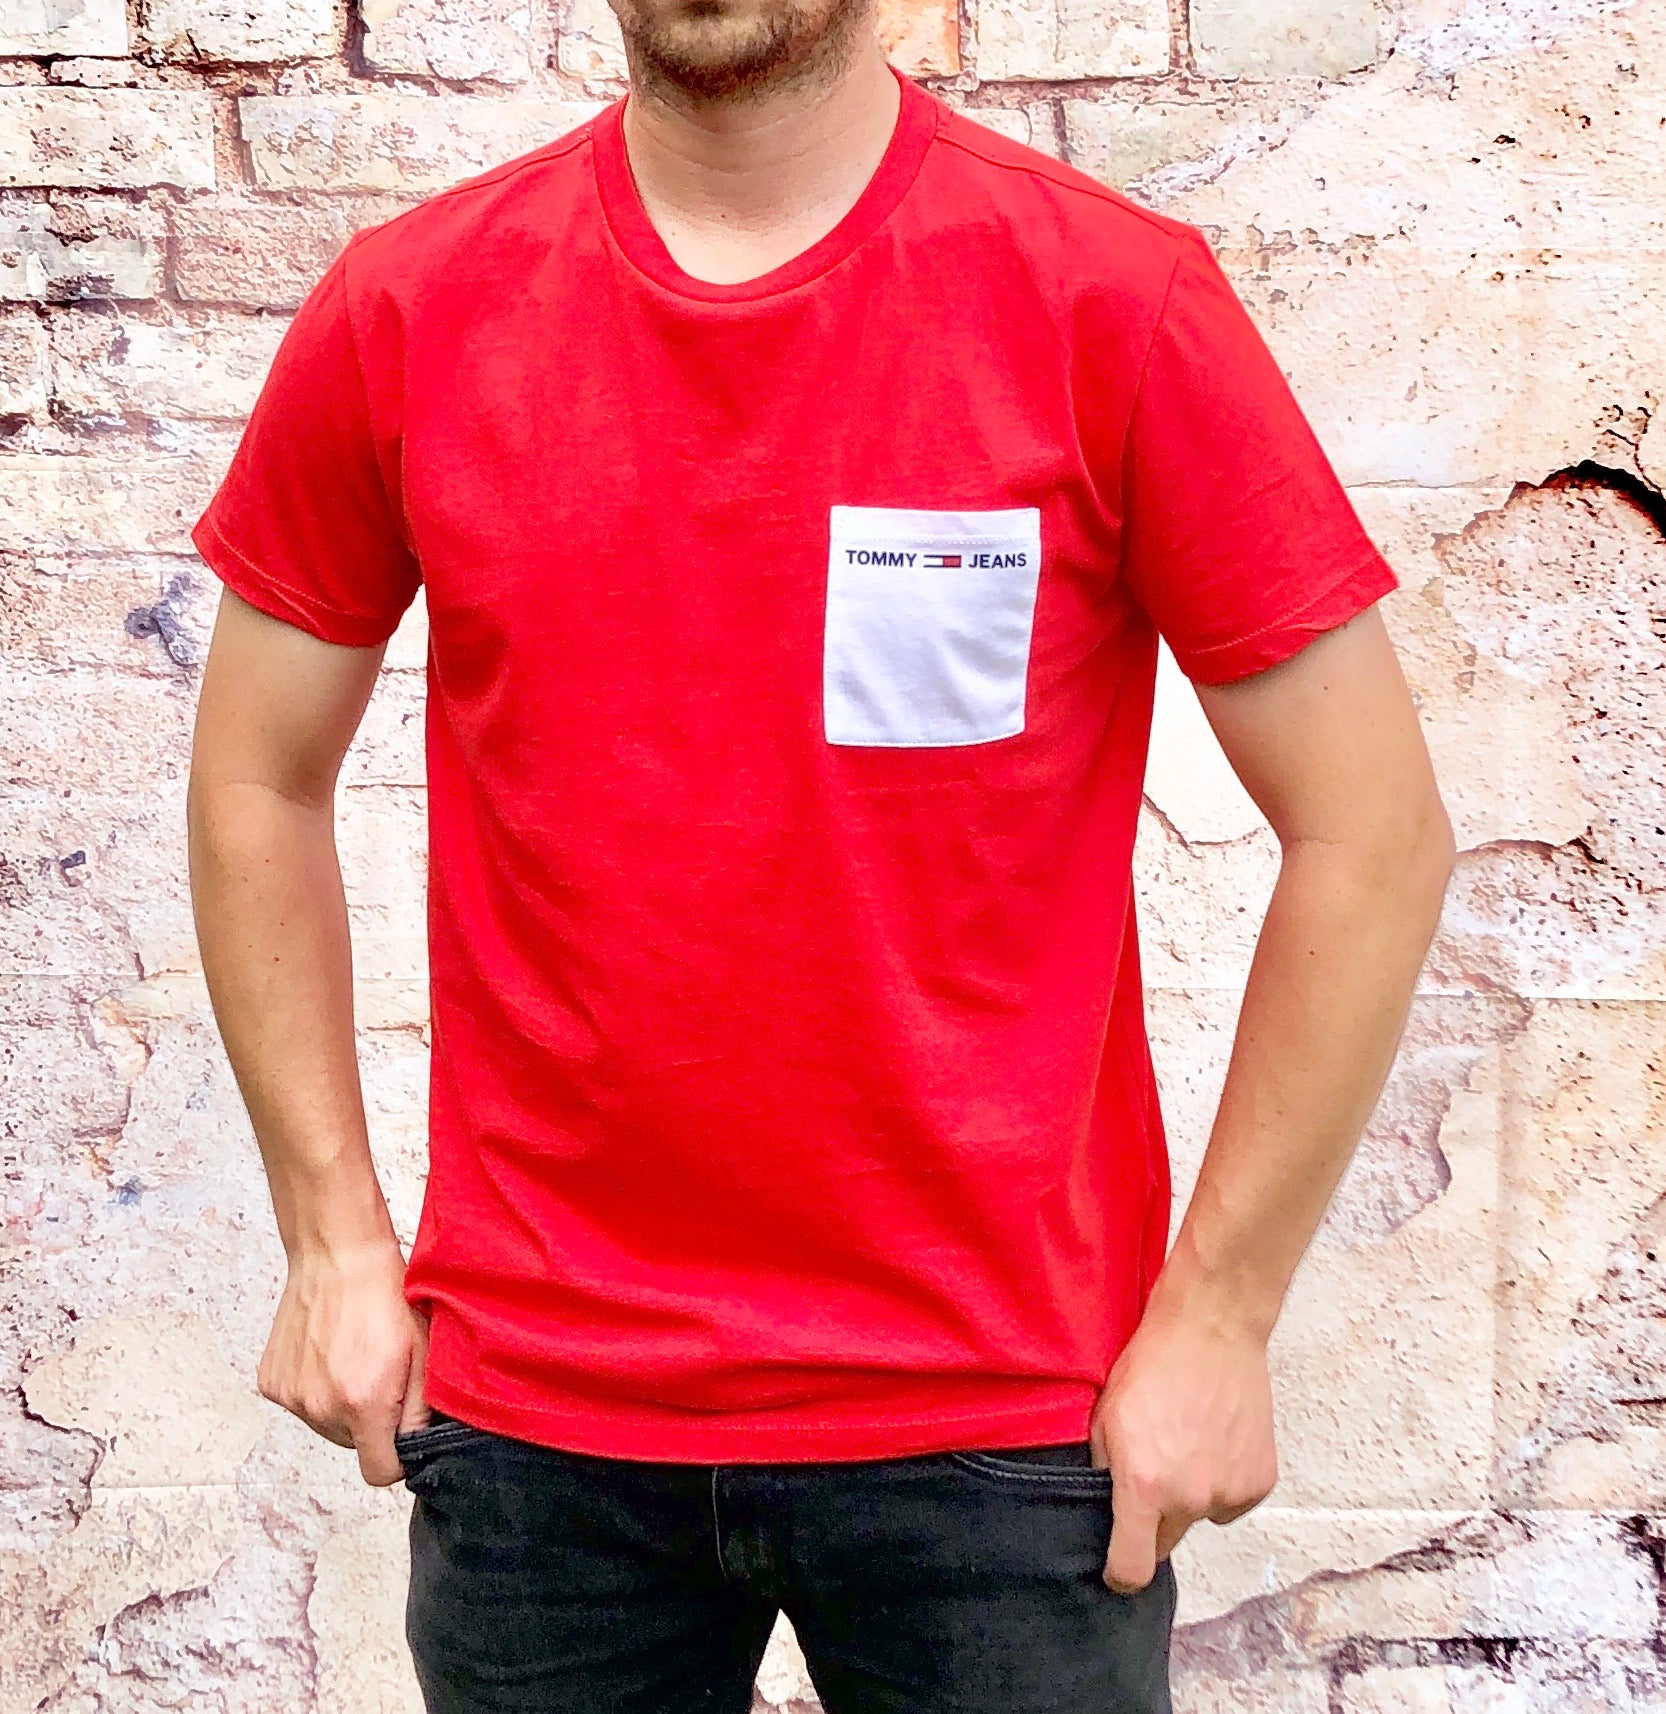 Tommy Hilfiger tshirt / tee shirt, men's branded designer – System